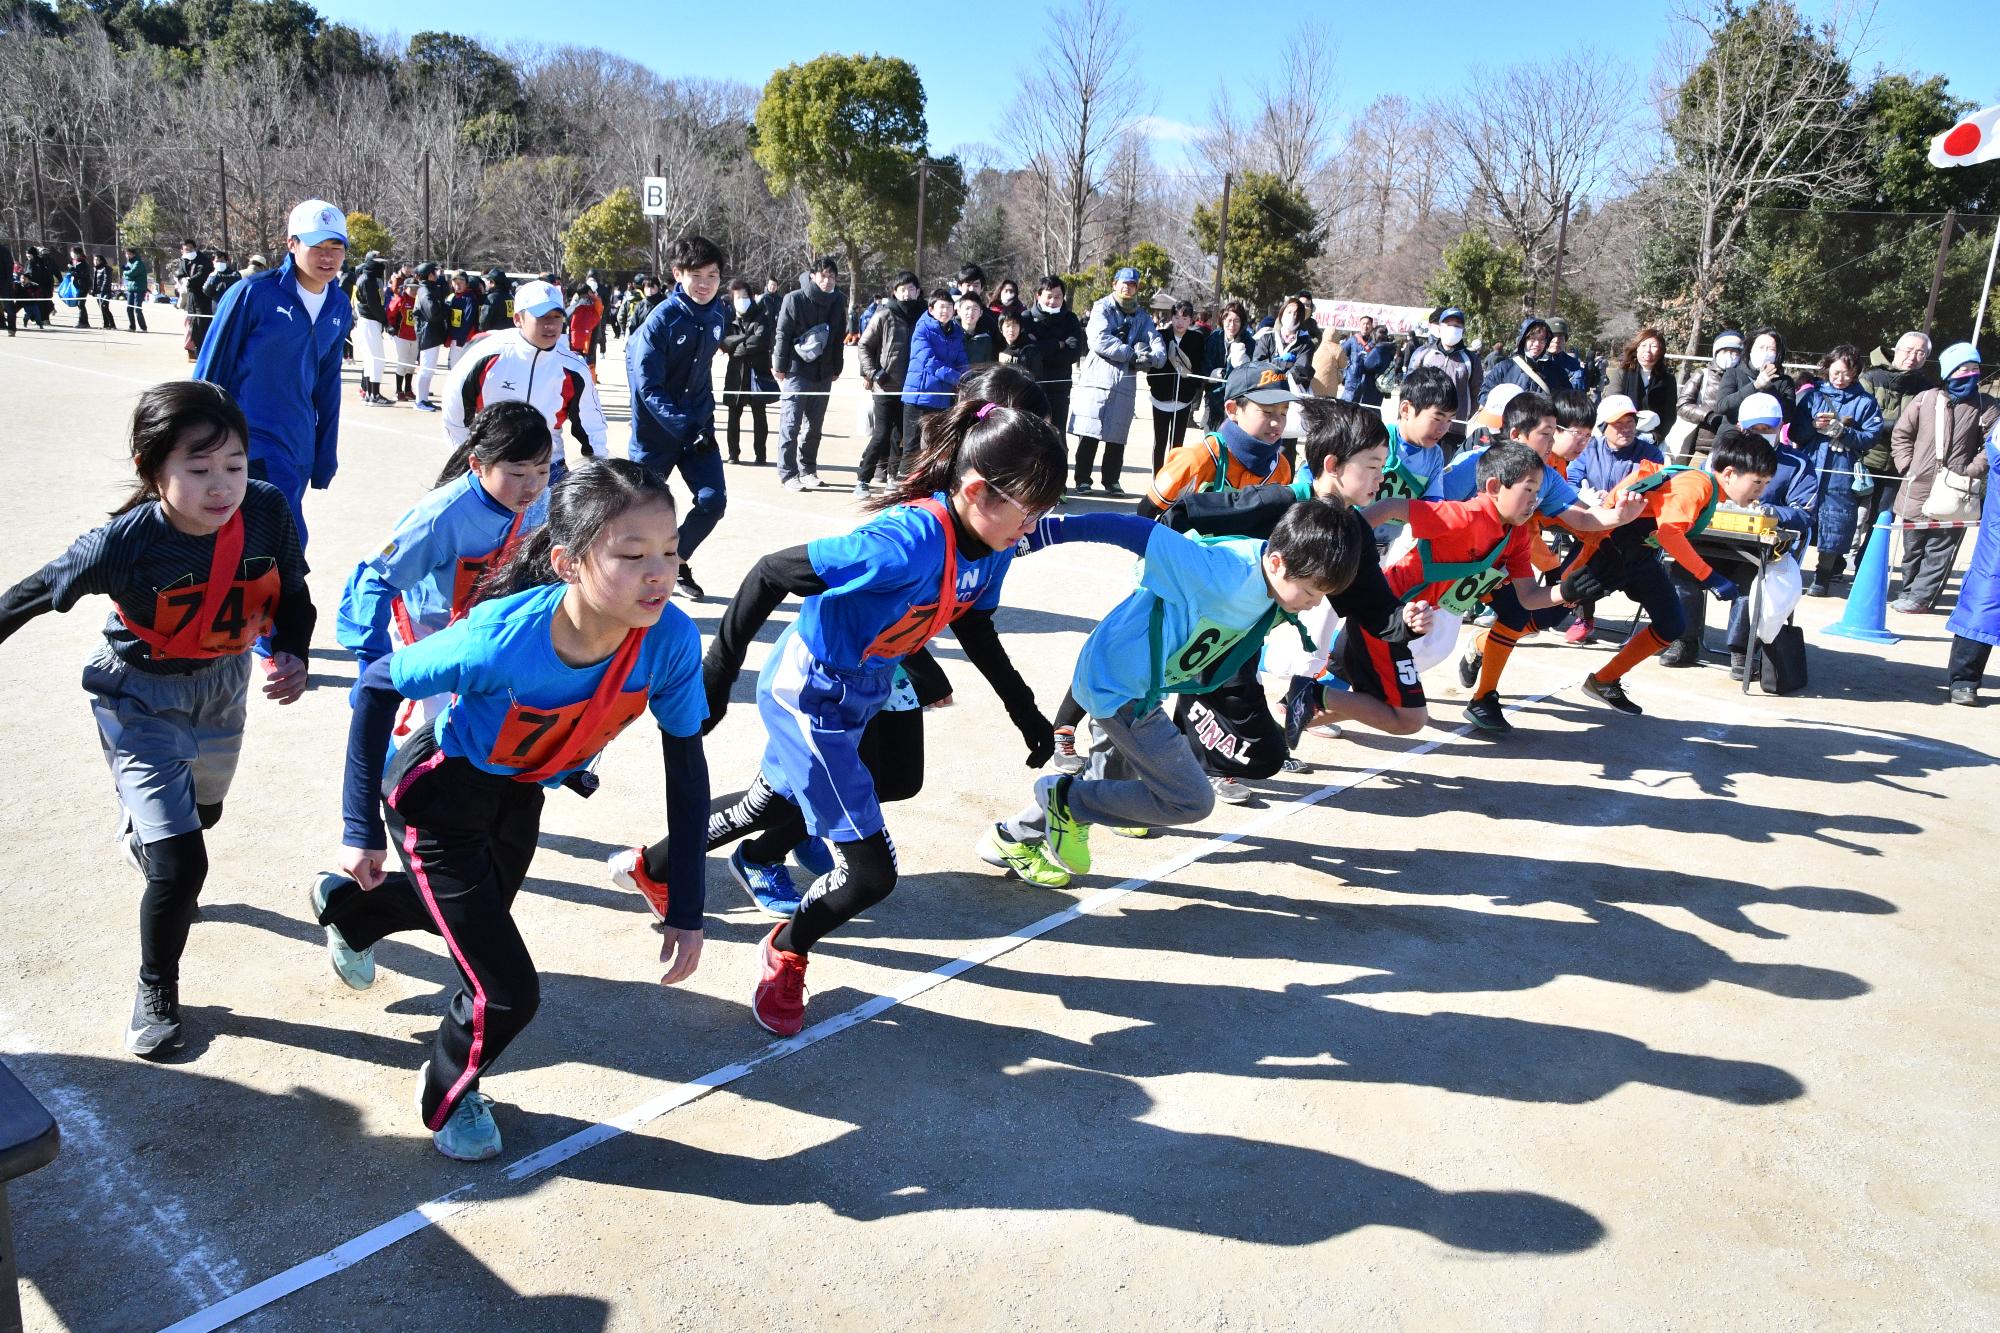 オケちゃん駅伝競走大会で、小学生の子供たちがスタートした瞬間の写真